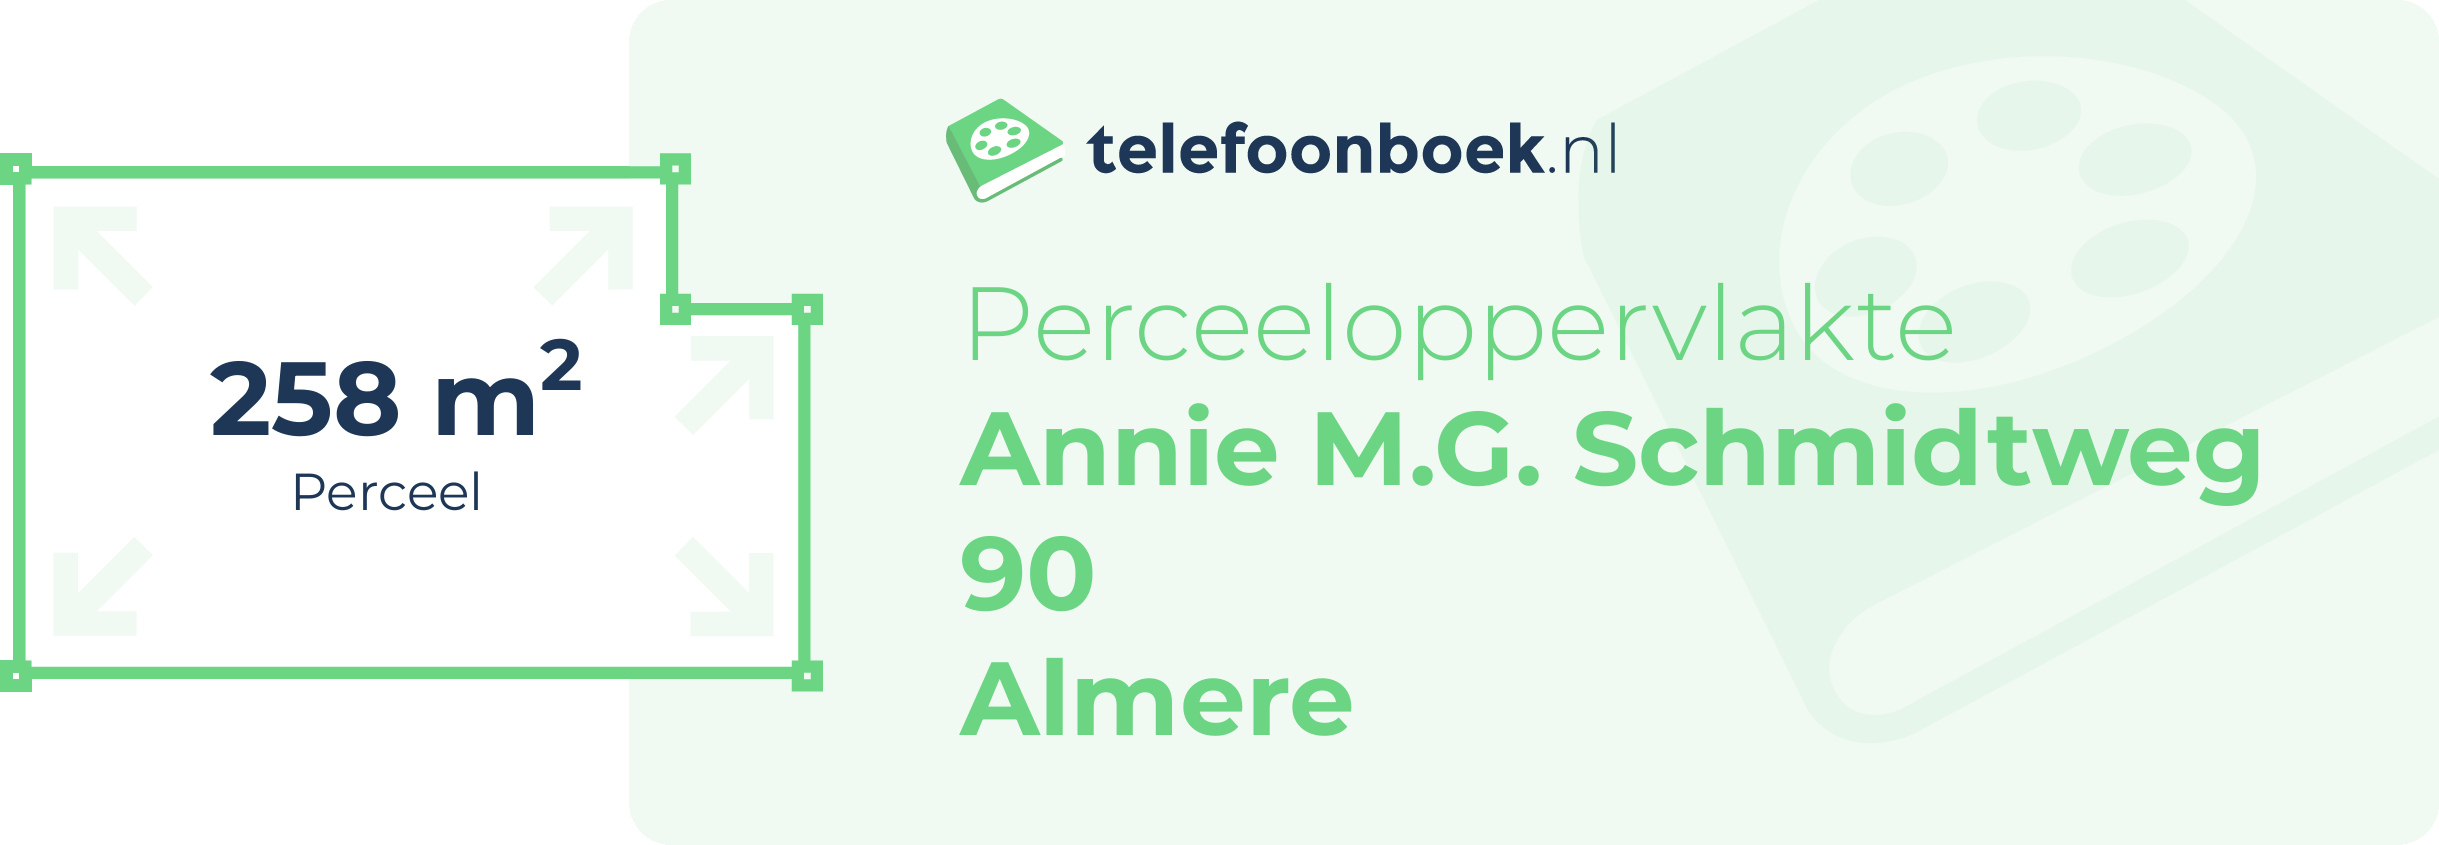 Perceeloppervlakte Annie M.G. Schmidtweg 90 Almere